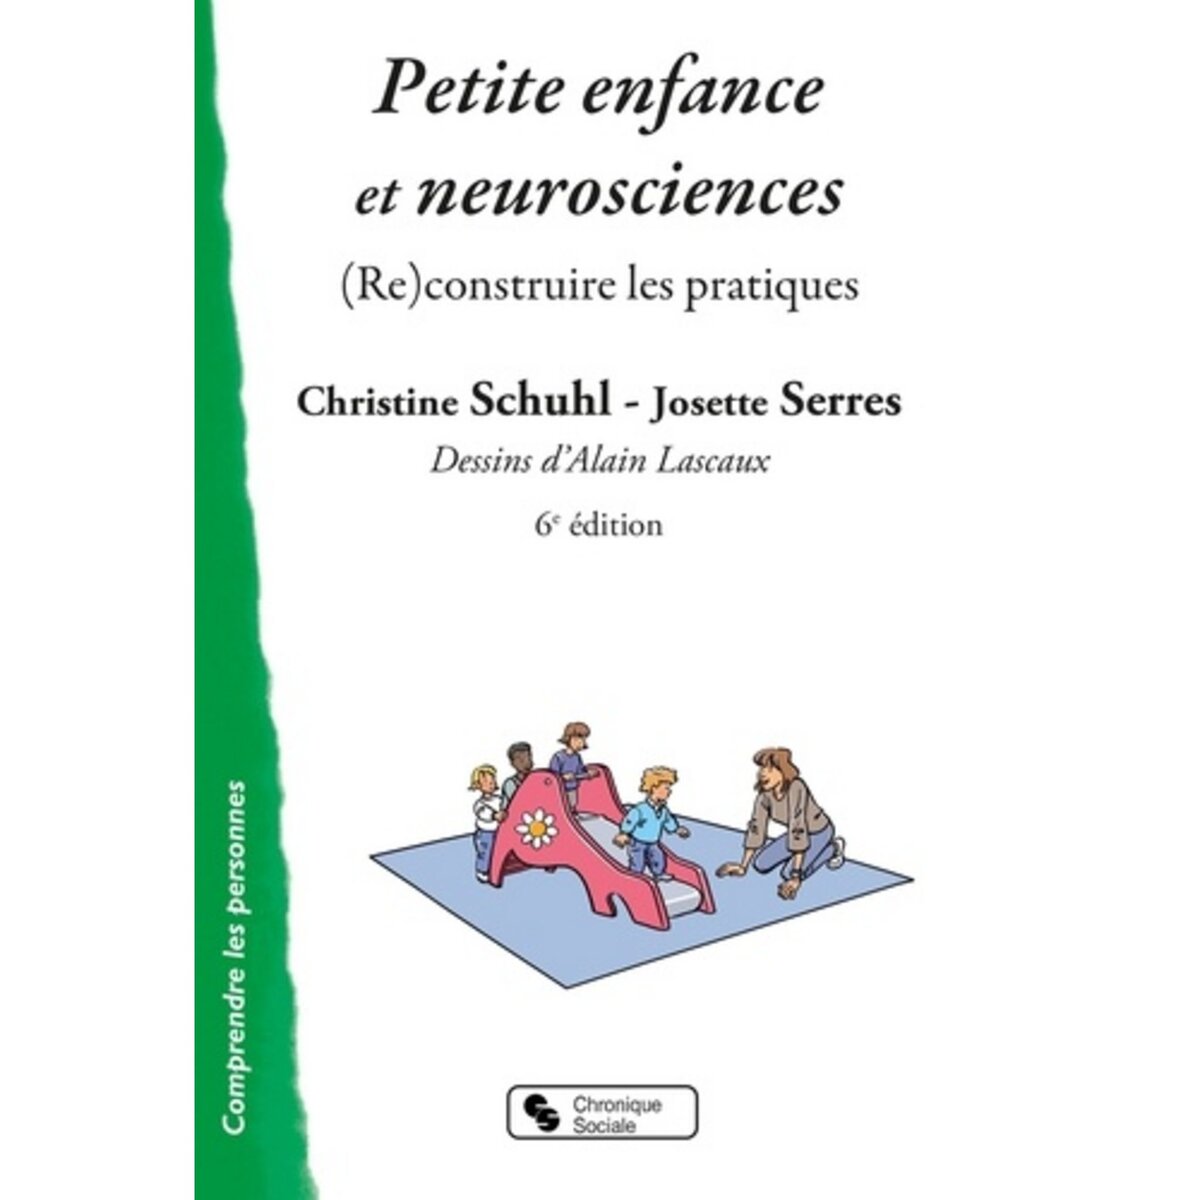  PETITE ENFANCE ET NEUROSCIENCES. (RE)CONSTRUIRE LES PRATIQUES, Schuhl Christine